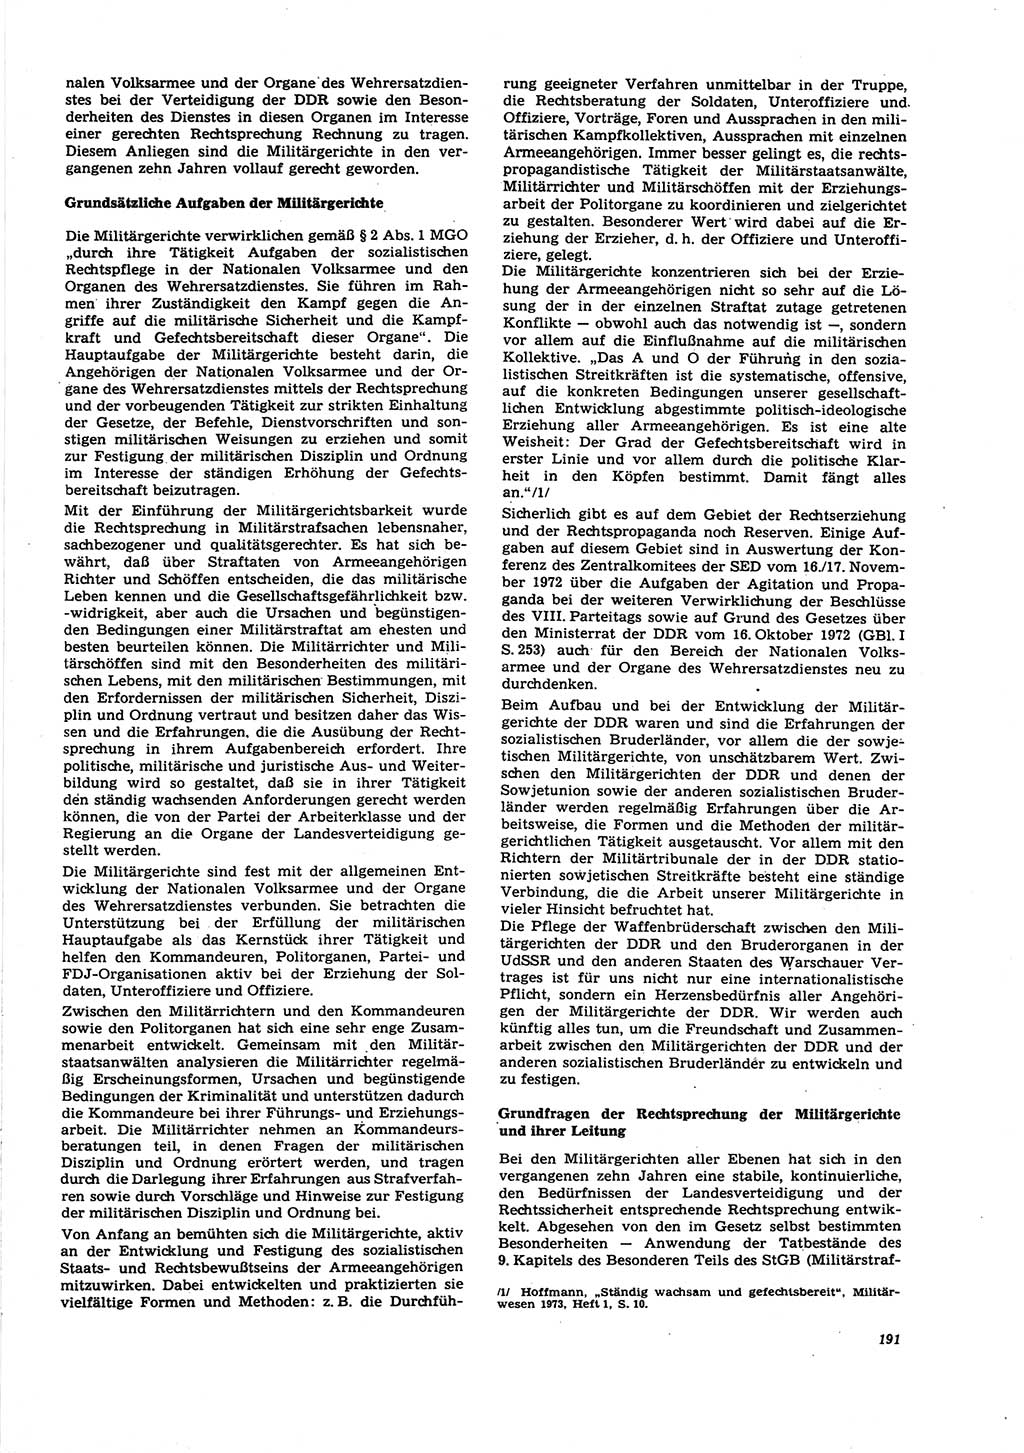 Neue Justiz (NJ), Zeitschrift für Recht und Rechtswissenschaft [Deutsche Demokratische Republik (DDR)], 27. Jahrgang 1973, Seite 191 (NJ DDR 1973, S. 191)